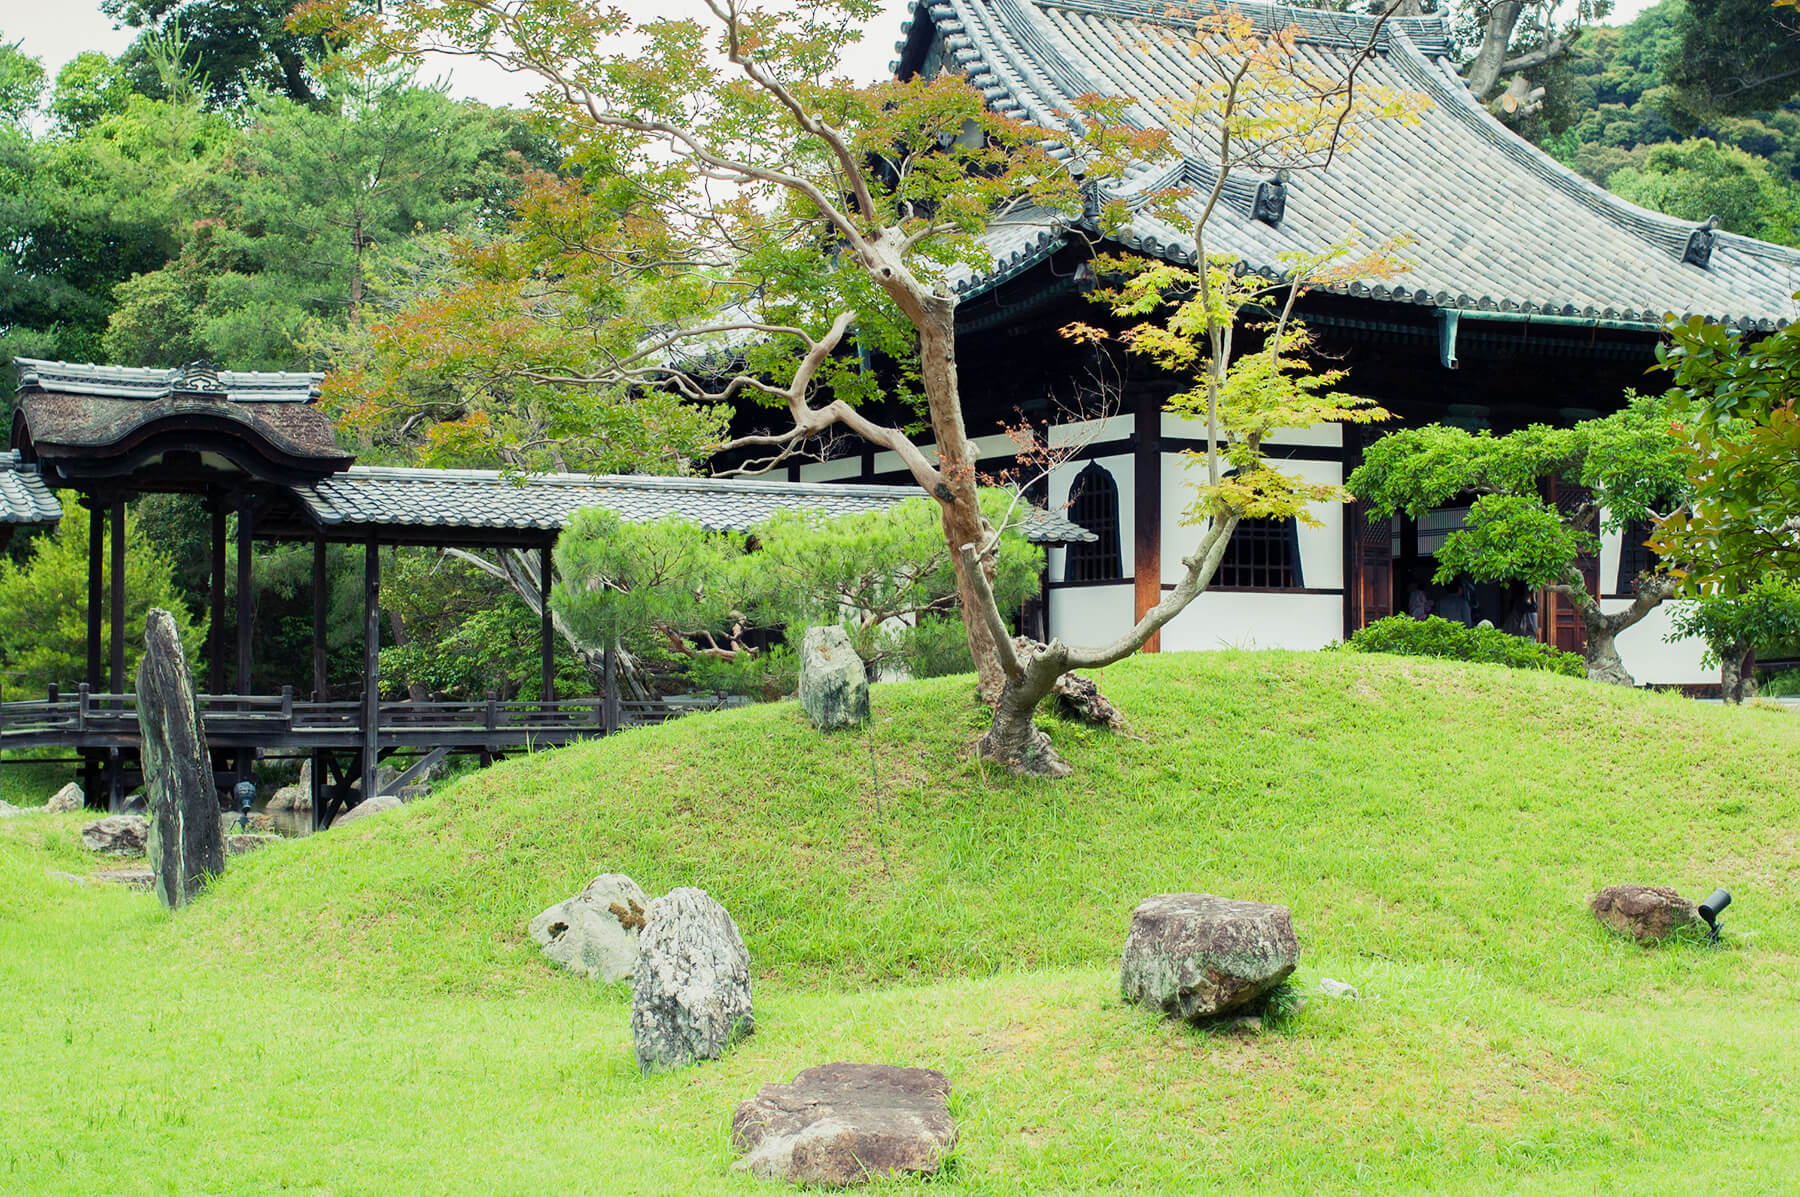 
          京都「高台寺本坊」の庭園写真1
      